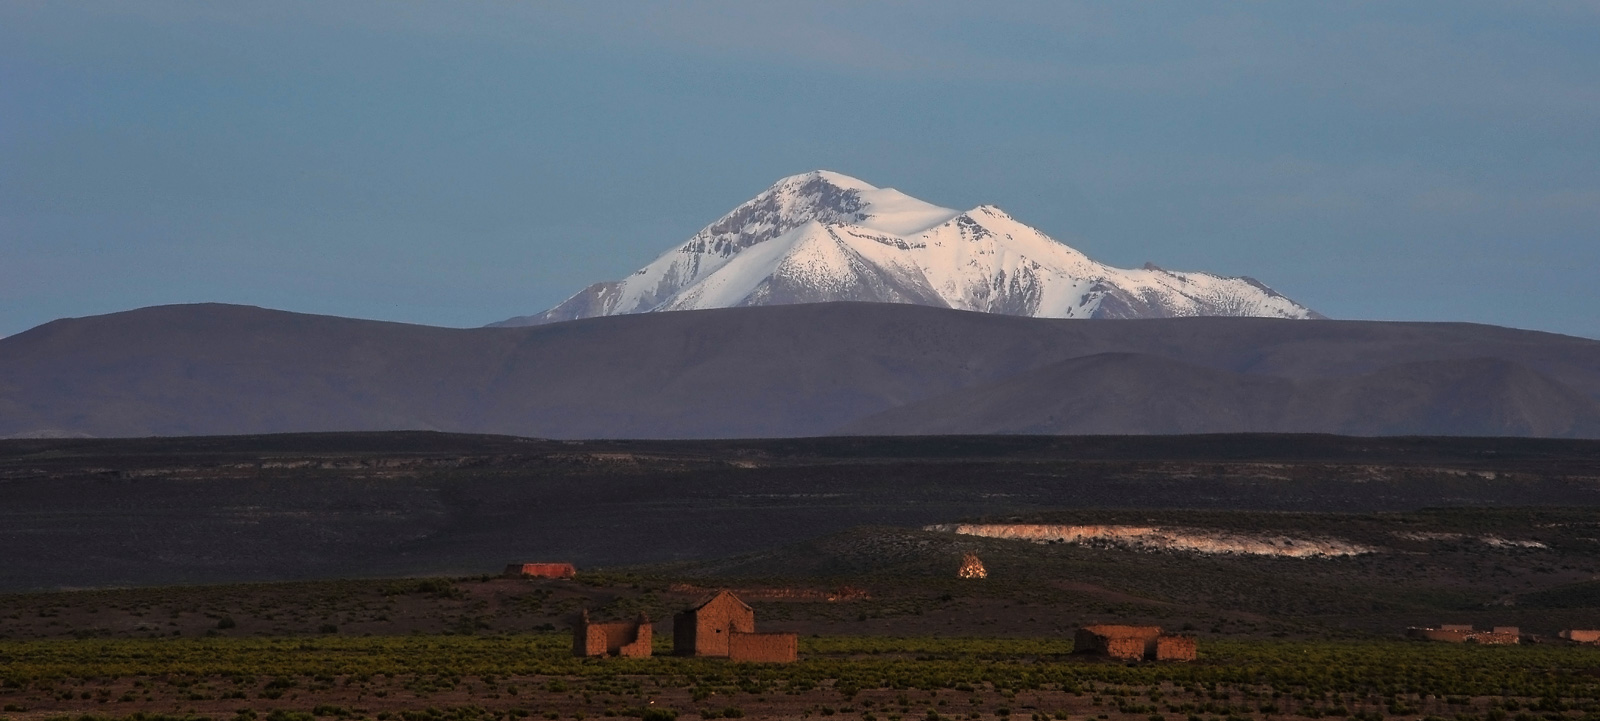 Die bolivianischen Anden am frühen Morgen [250 mm, 13.0 Sek. bei f / 22, ISO 200]